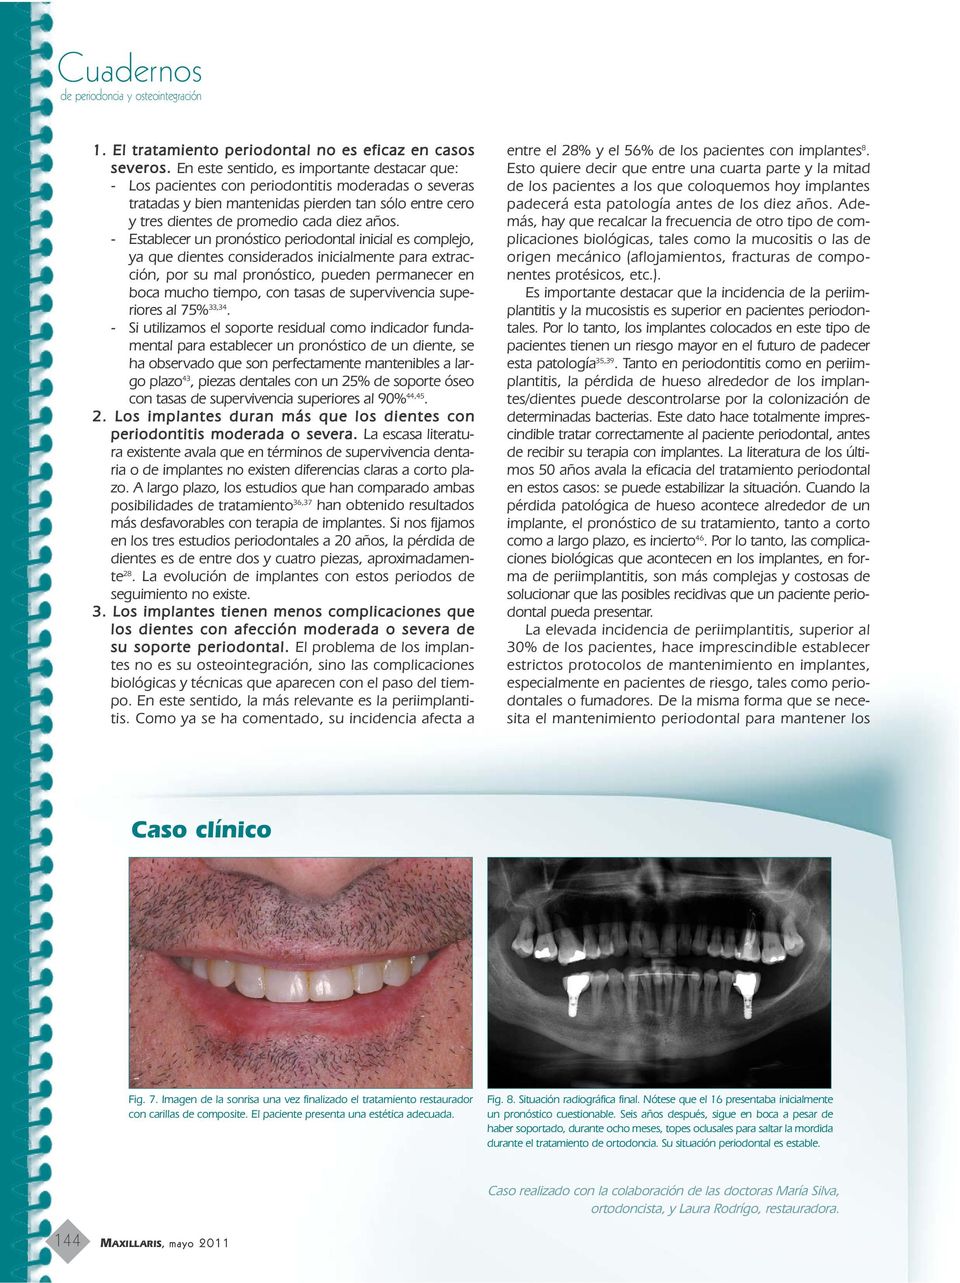 - Establecer un pronóstico periodontal inicial es complejo, ya que dientes considerados inicialmente para extracción, por su mal pronóstico, pueden permanecer en boca mucho tiempo, con tasas de